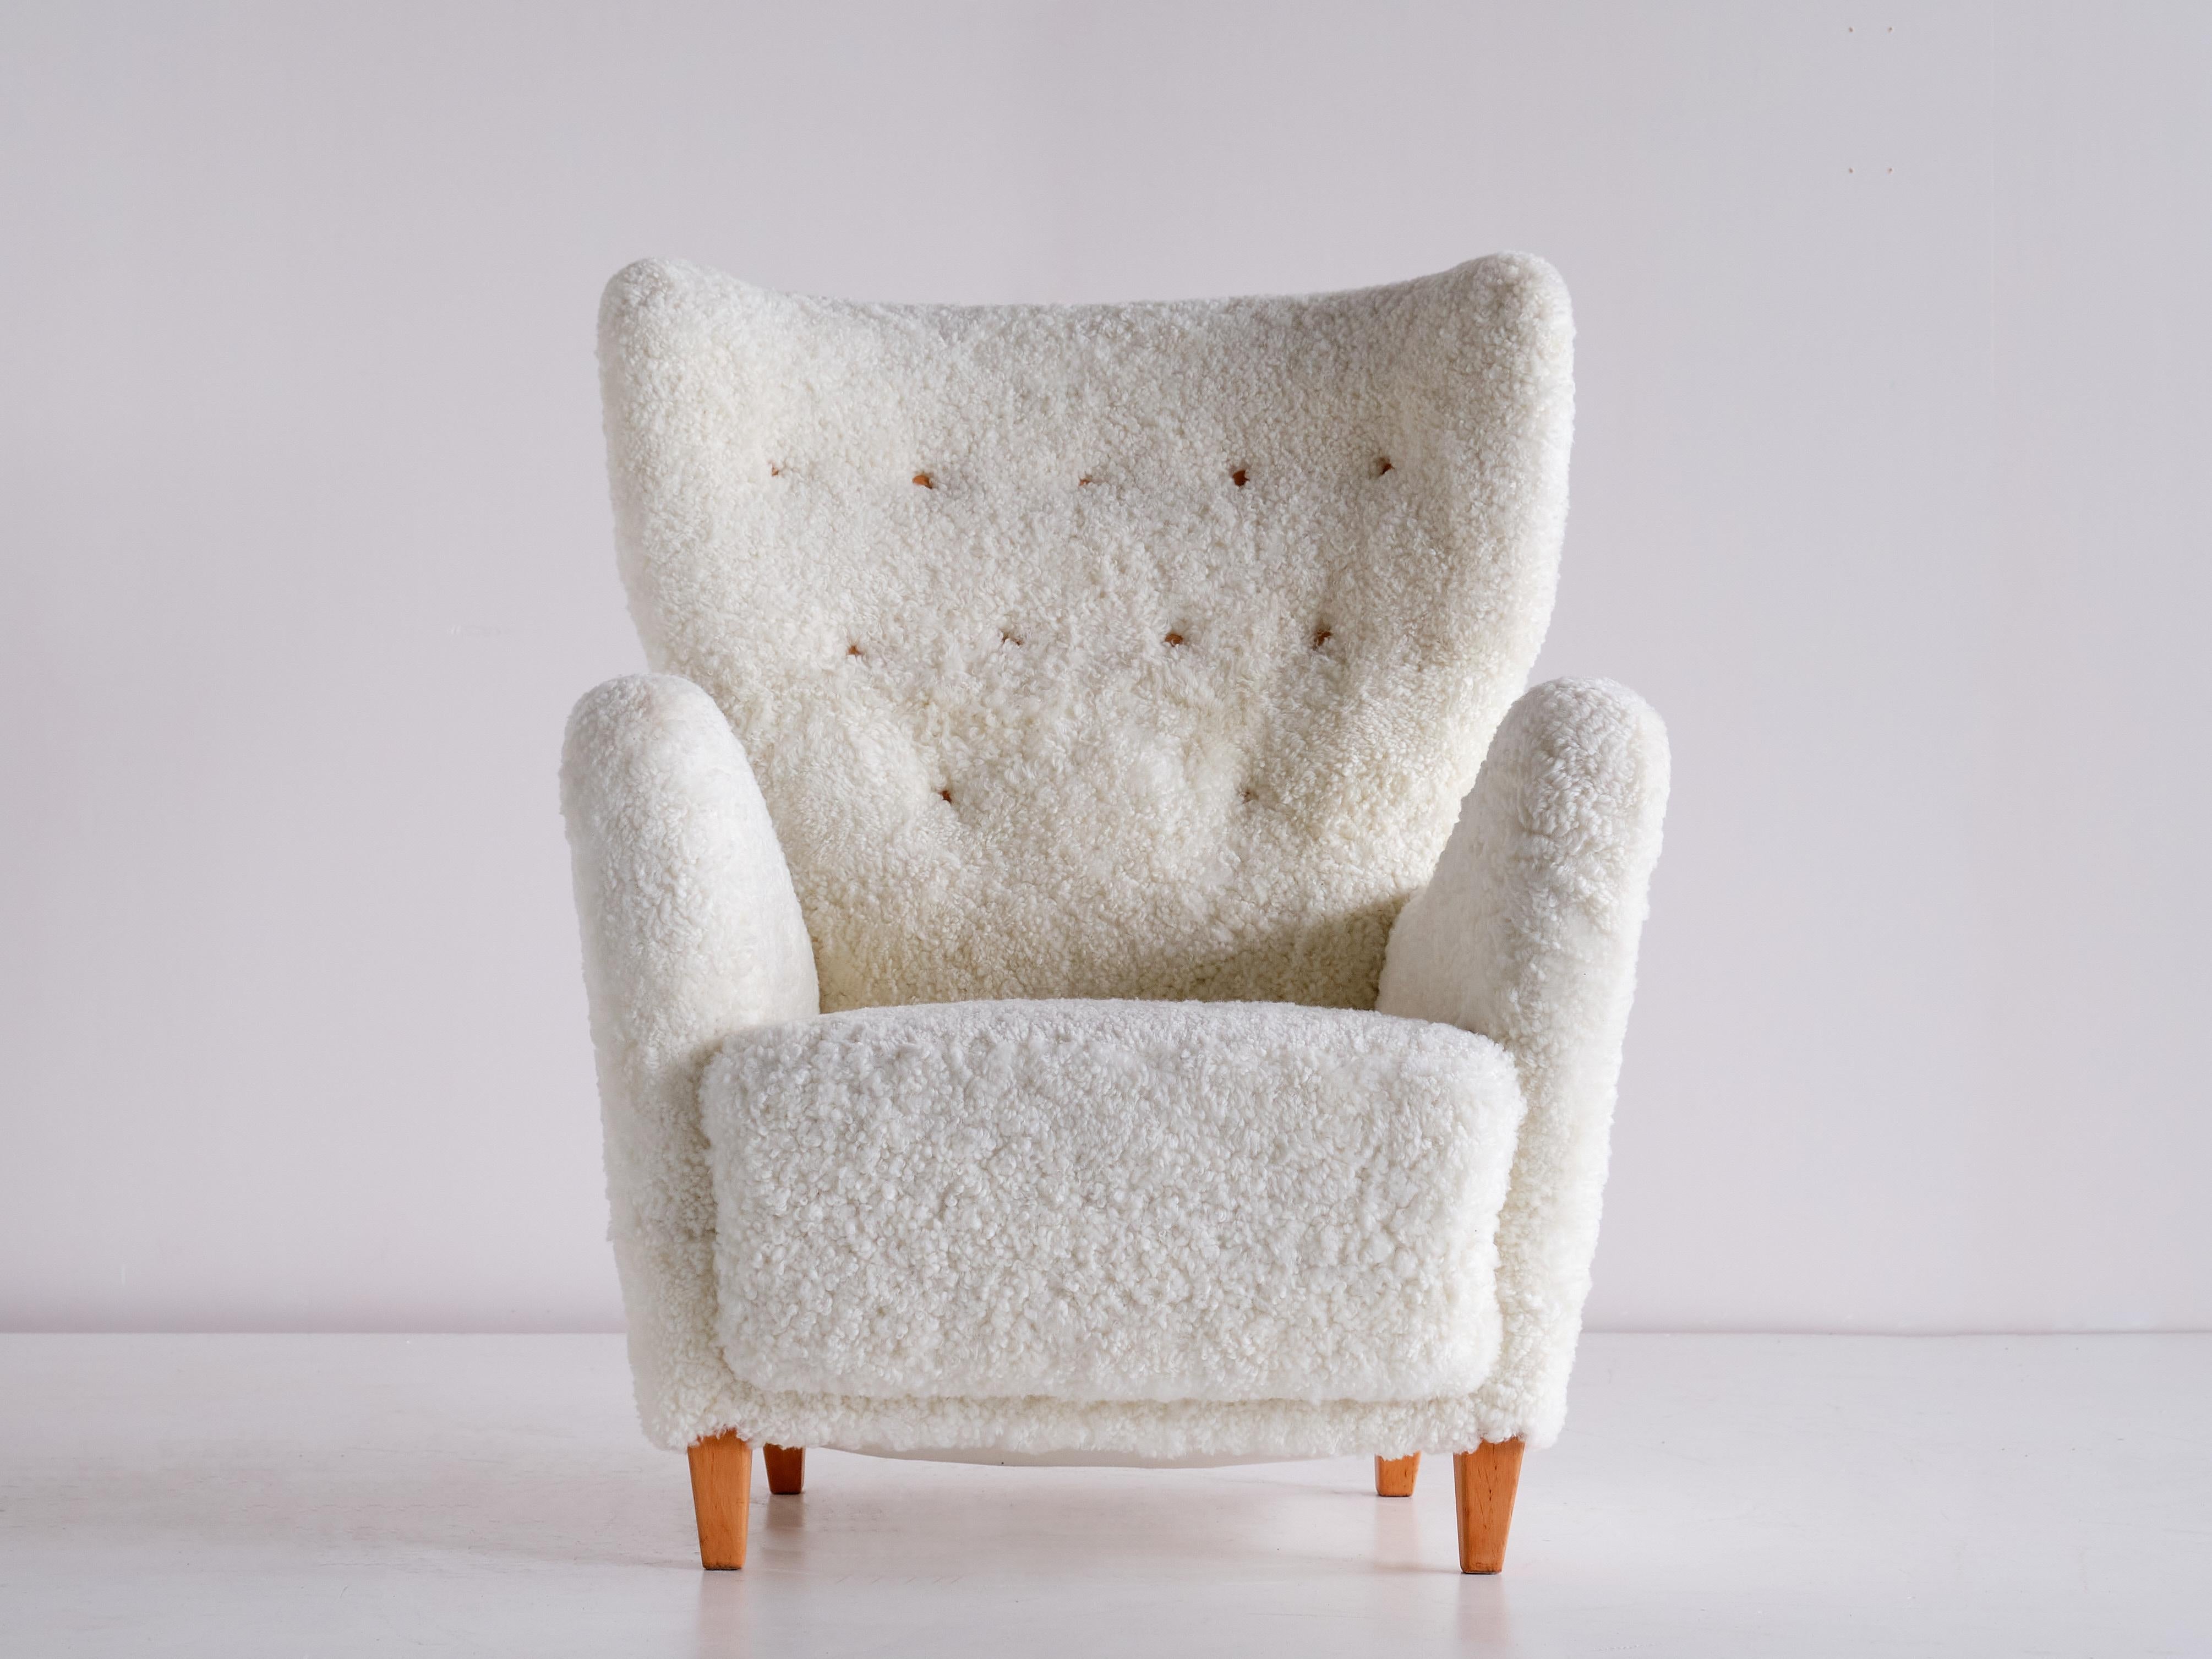 Cette rare chaise à dossier a été conçue par Otto Schulz et produite par Boet à Goteborg, en Suède, dans les années 1940. Les lignes organiques élégantes du design créent une silhouette saisissante. Ses proportions généreuses et son dossier haut en